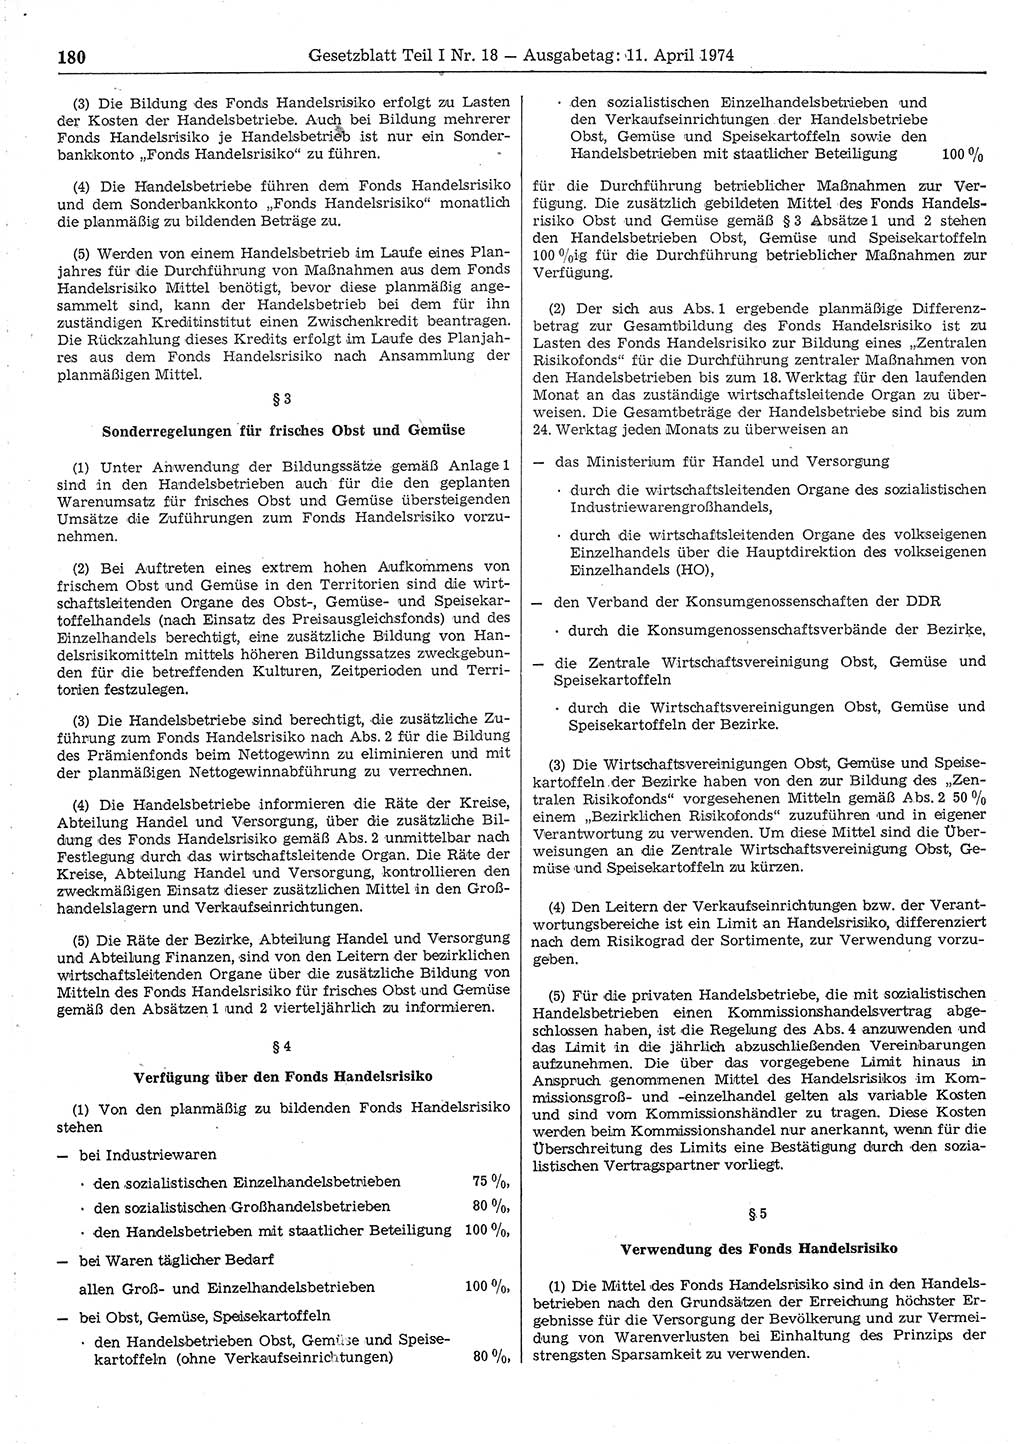 Gesetzblatt (GBl.) der Deutschen Demokratischen Republik (DDR) Teil Ⅰ 1974, Seite 180 (GBl. DDR Ⅰ 1974, S. 180)